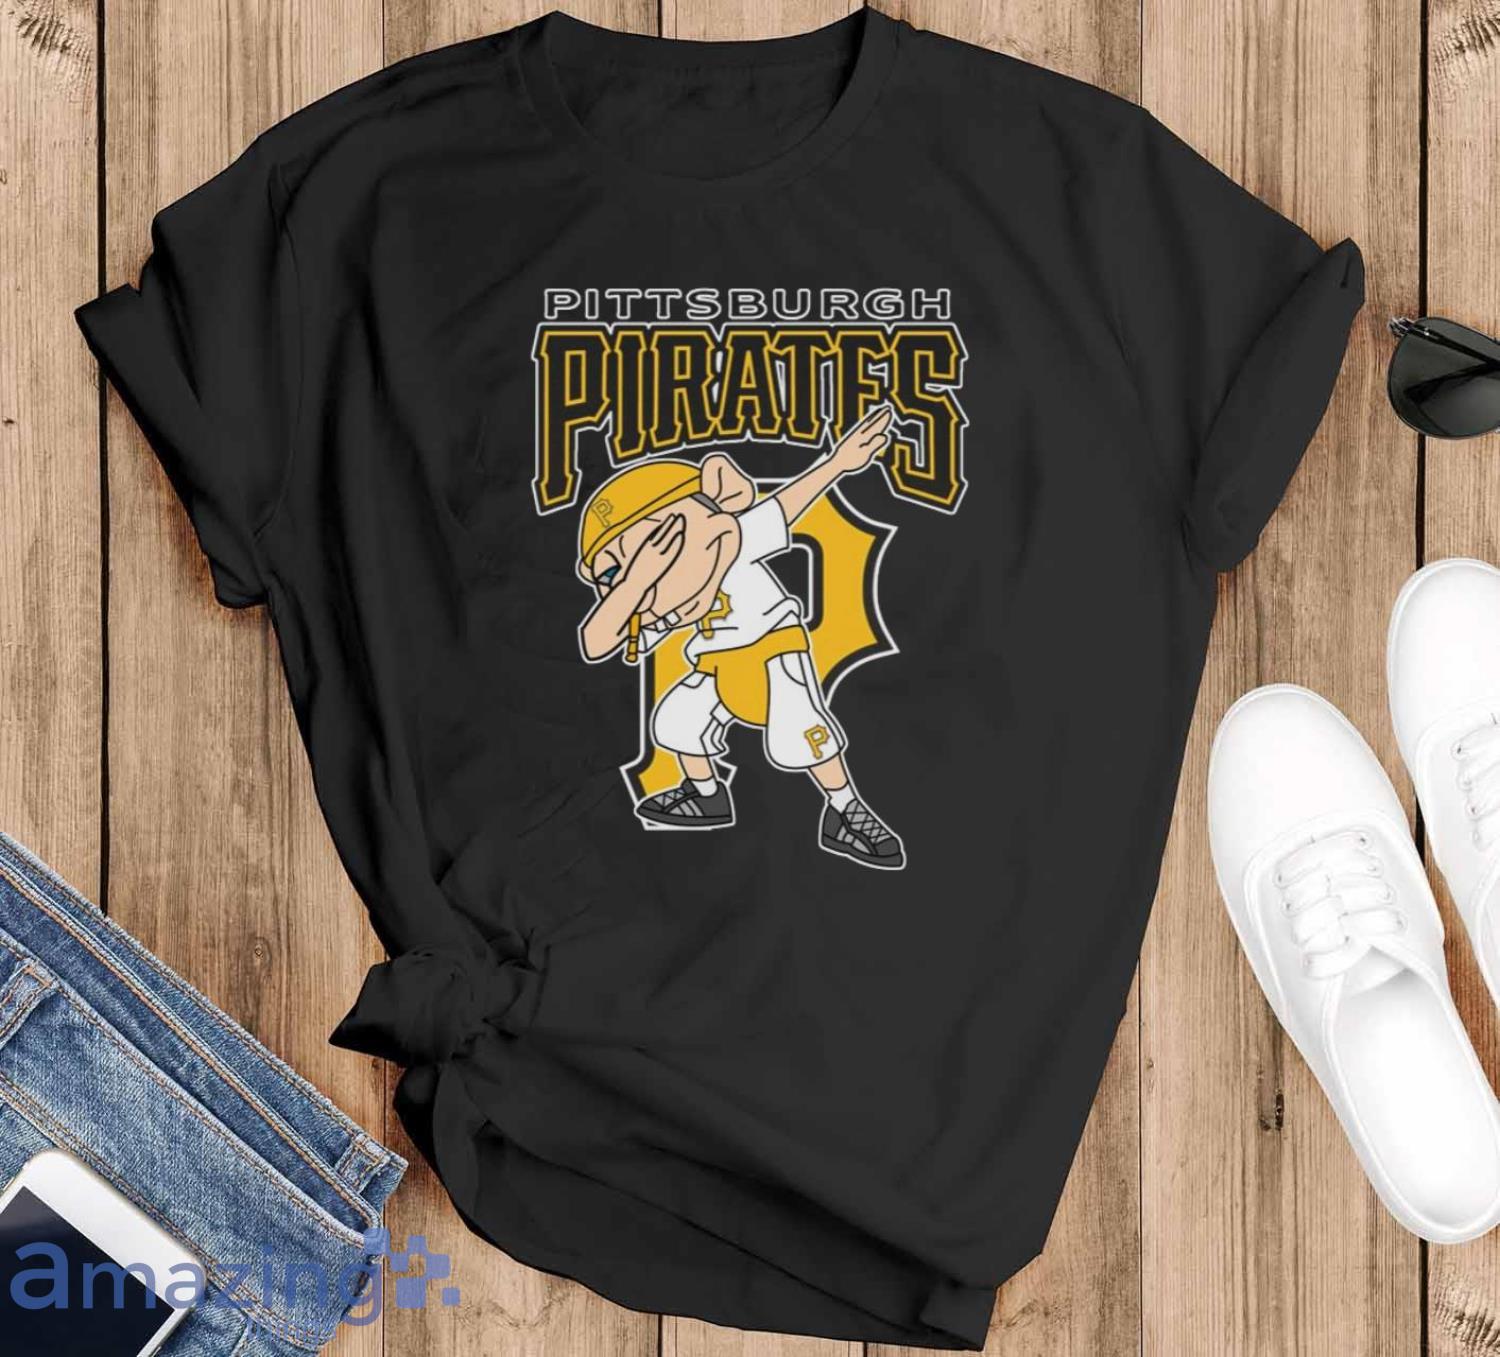 Pittsburgh Pirates Ladies T-Shirts, Pirates Tees, Shirts